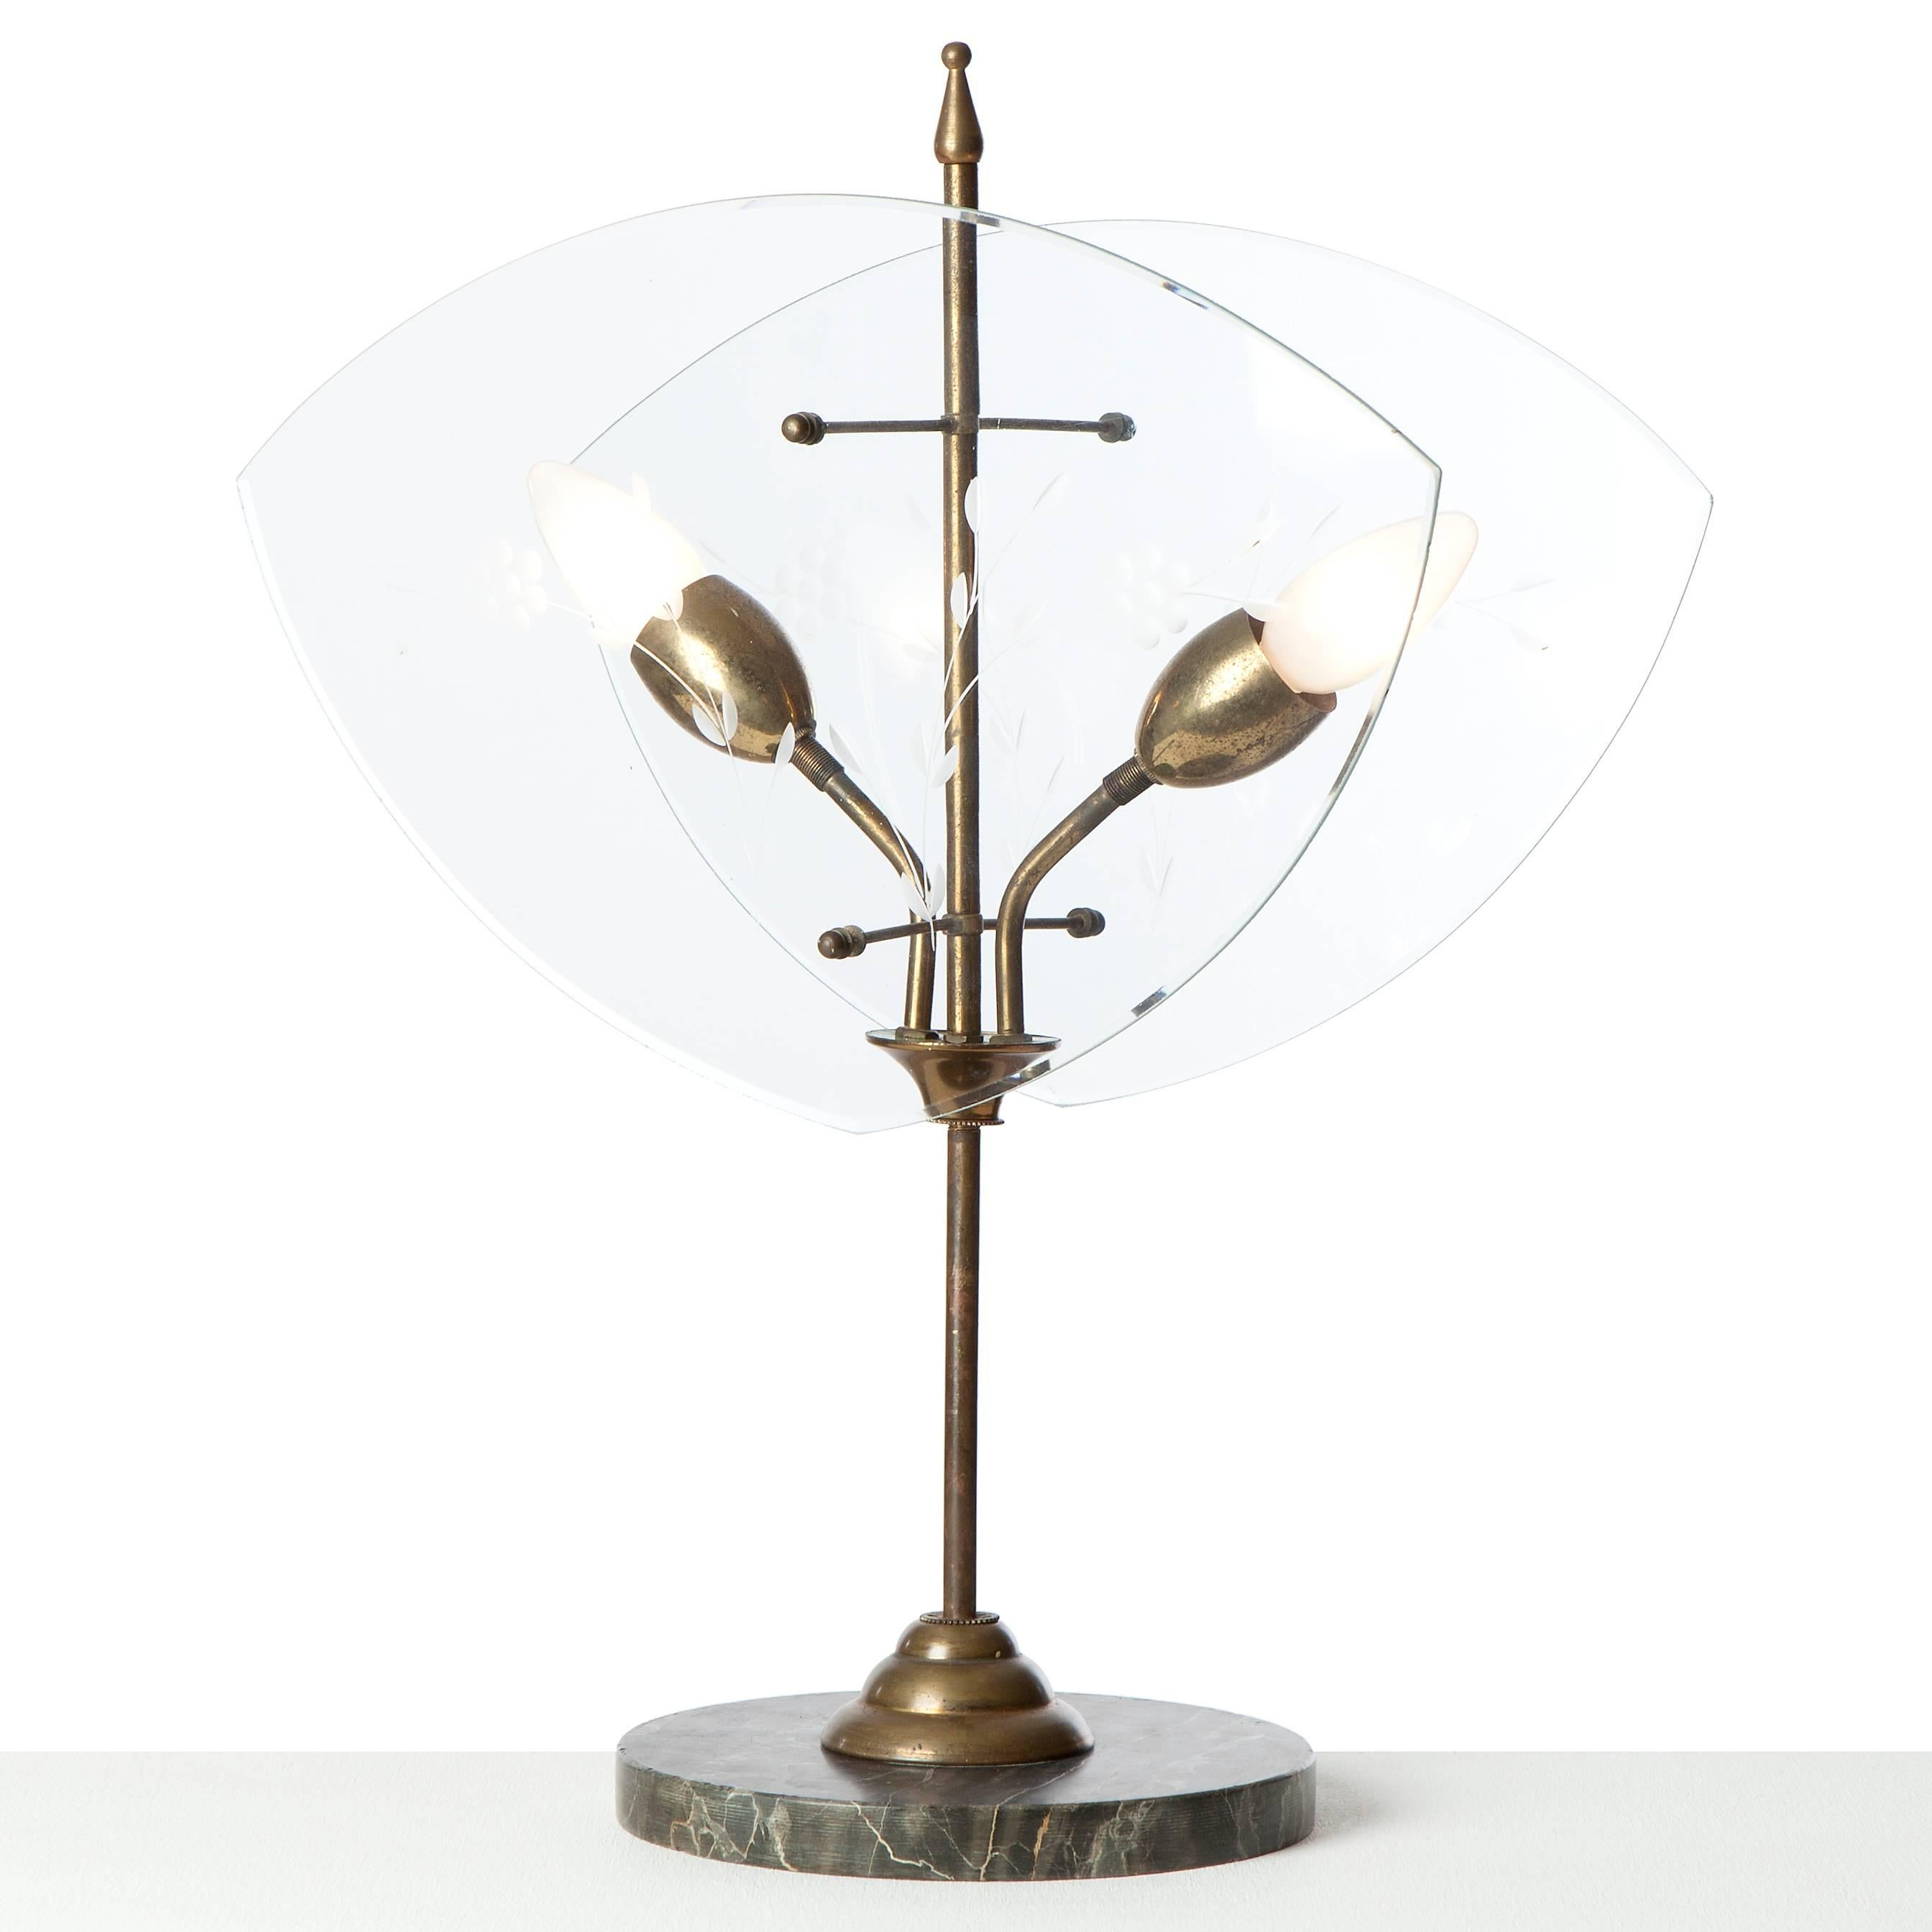 Lampe de table à deux lumières de Fontana Arte (attribuée à), avec une tige en laiton. Flanquée de deux plaques de verre gravées d'un motif floral. La lampe est en état vintage, il y a une petite rayure à trouver seulement à voir de très près.